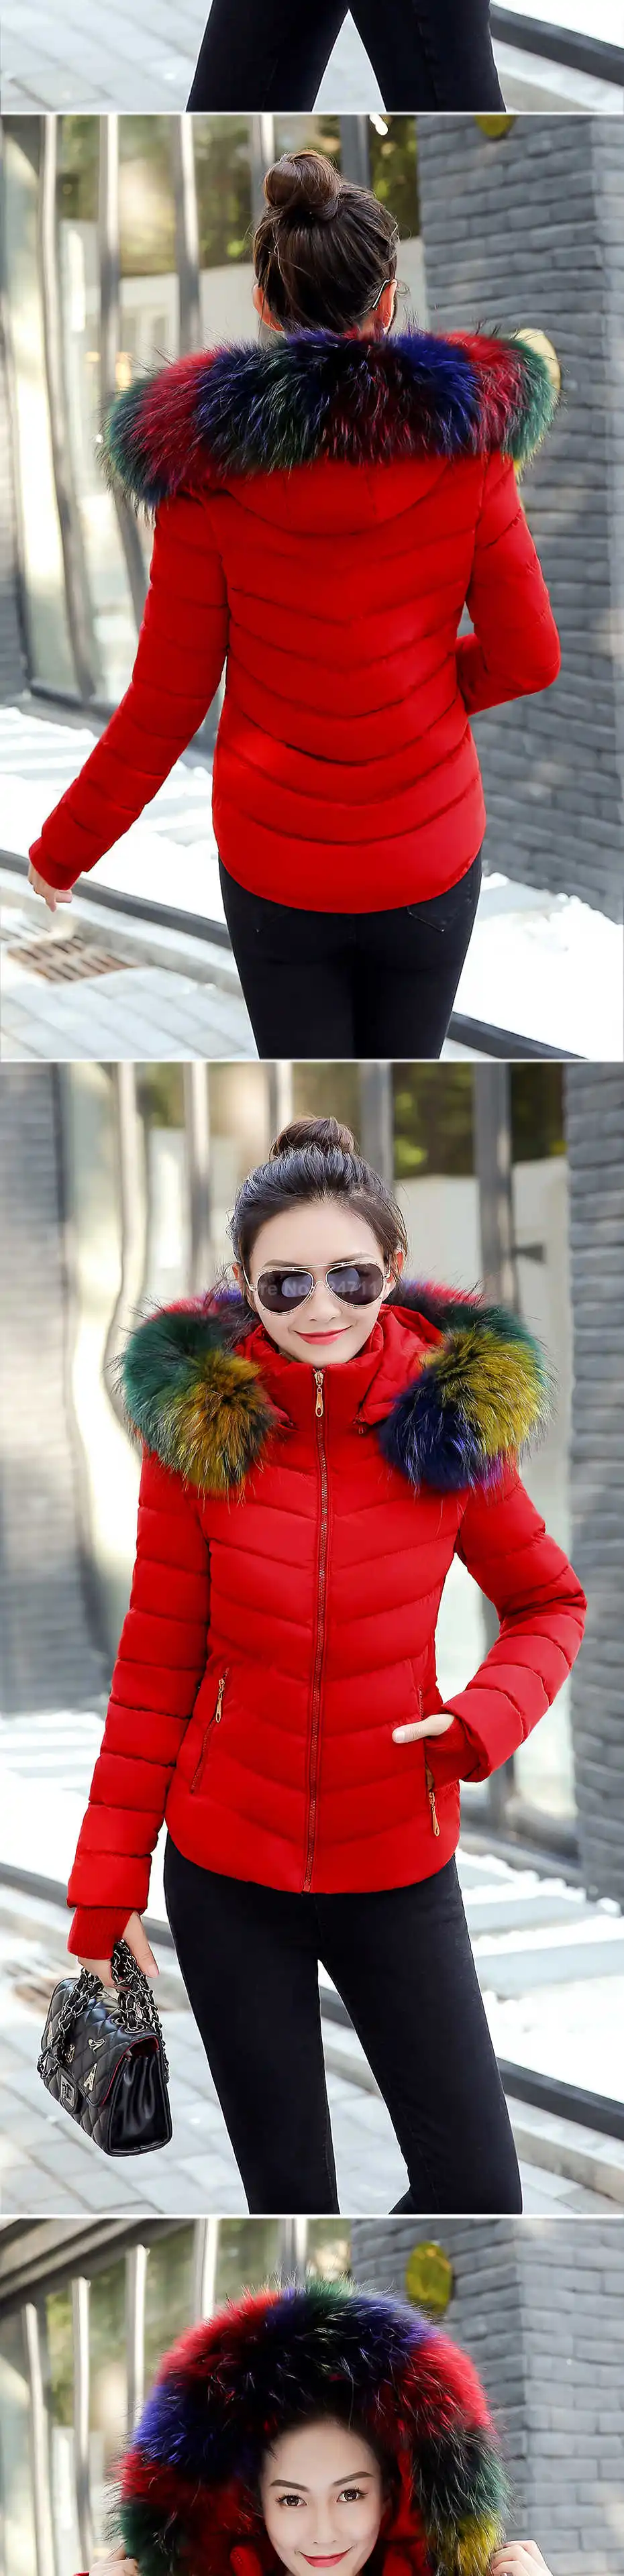 Парка женская модная женская пуховая куртка пальто женская зимняя куртка верхняя одежда женская куртка разноцветный искусственный мех воротник